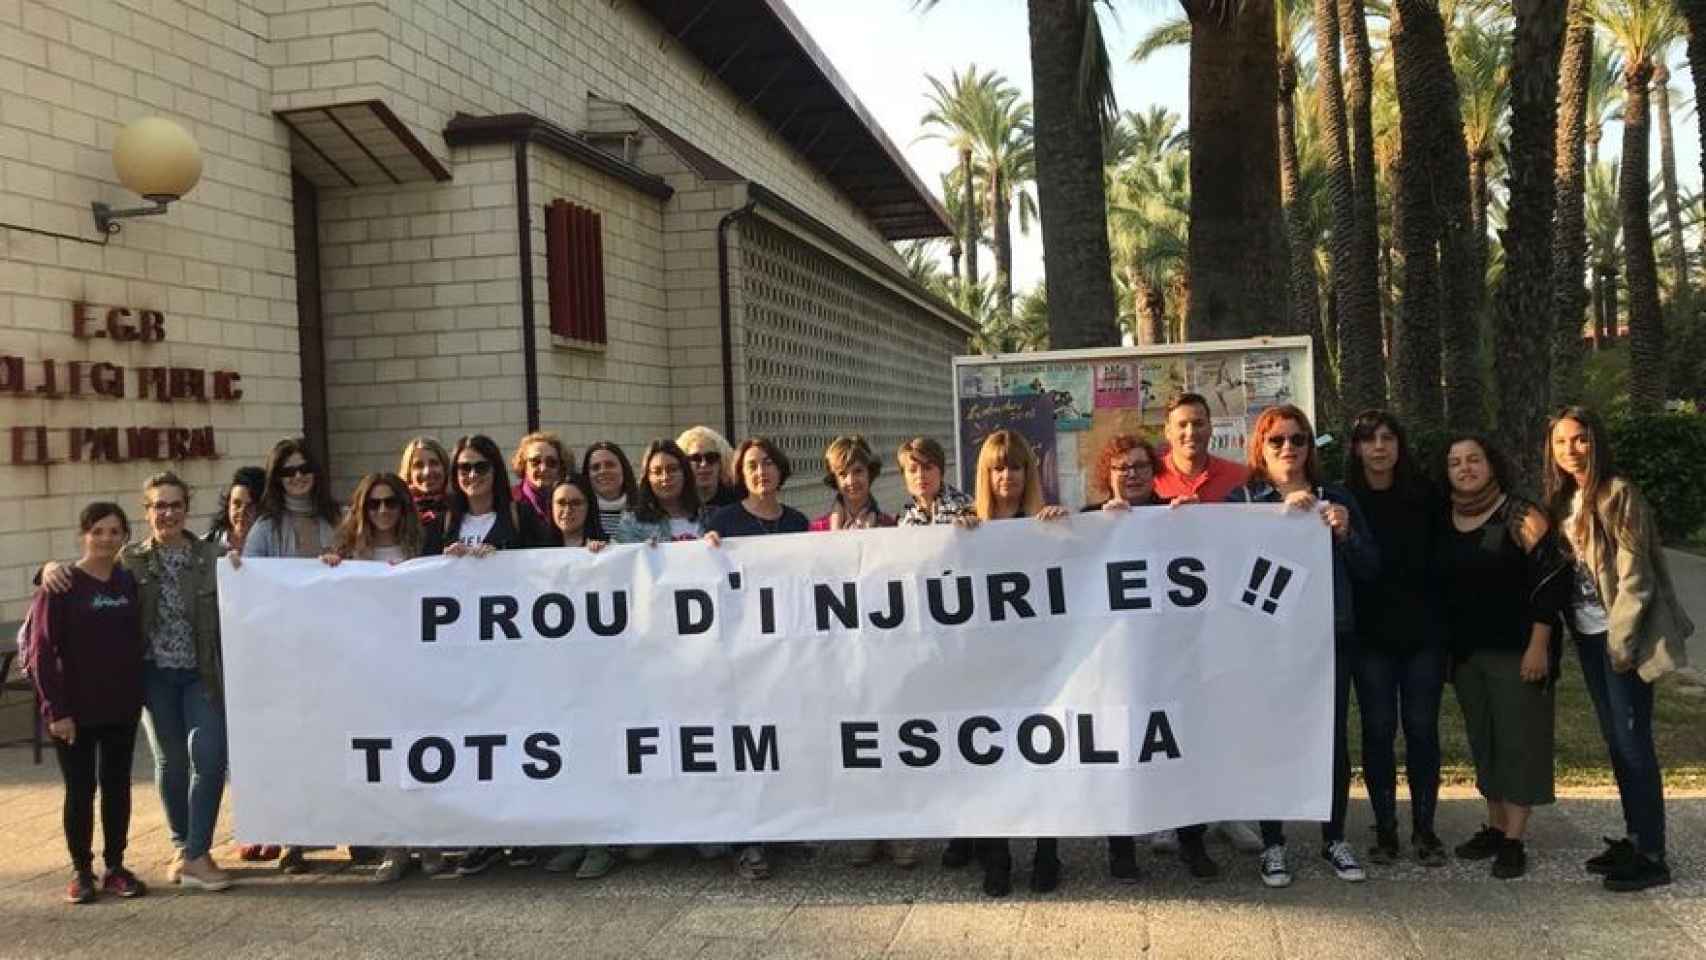 La protesta que hubo en 2018 de parte del profesorado contra las injurias que aseguran que recibieron.